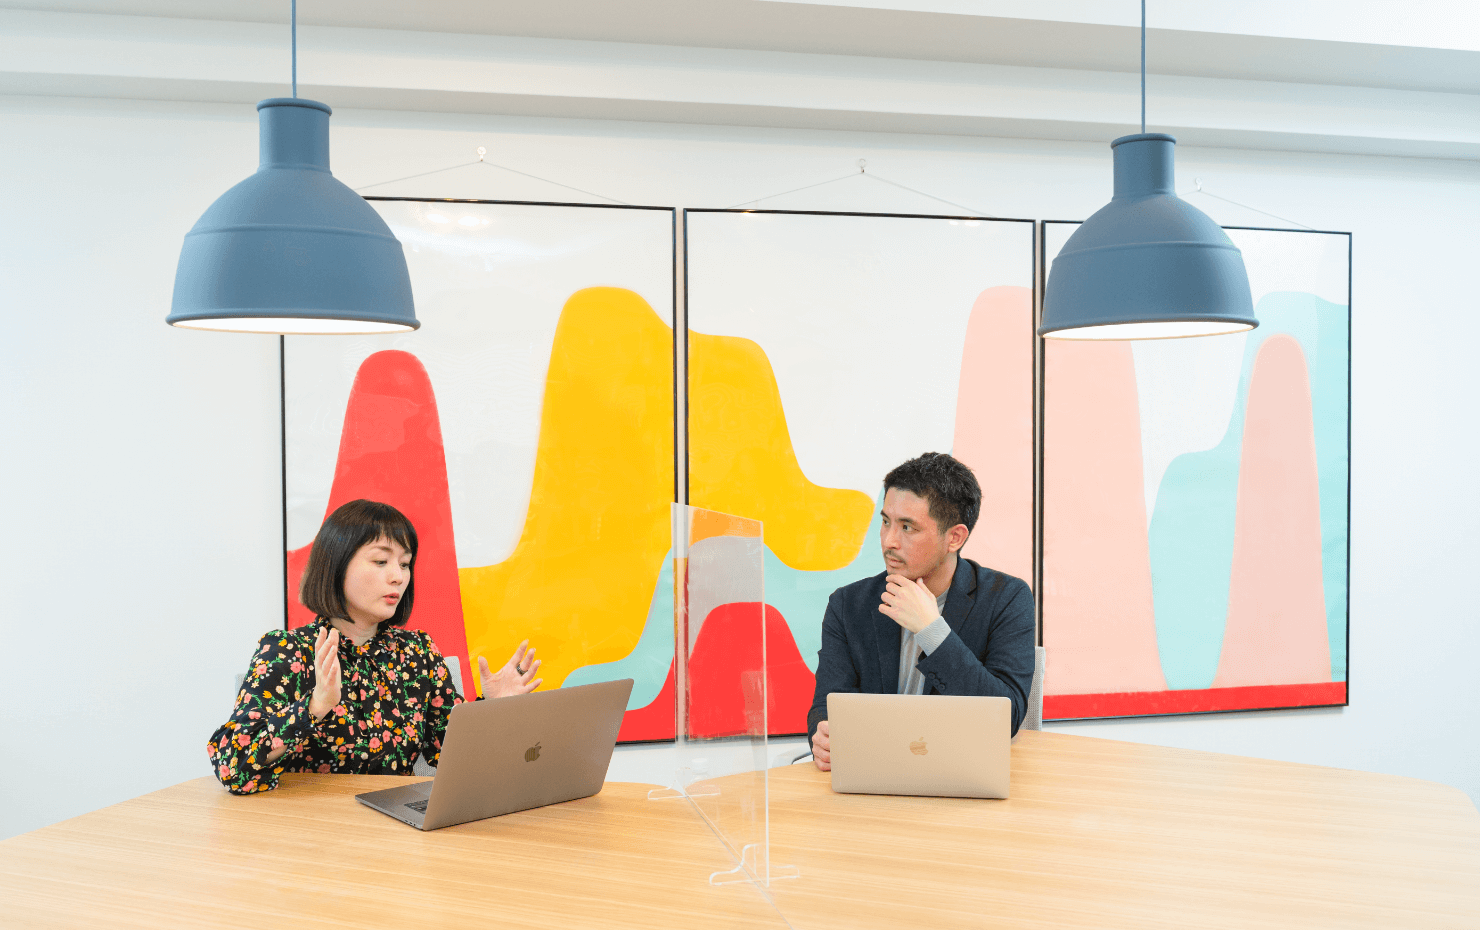 データビズラボのオフィス内、永田氏と大崎が並んで座っている。デスク上には透明なアクリル板が立てられている。